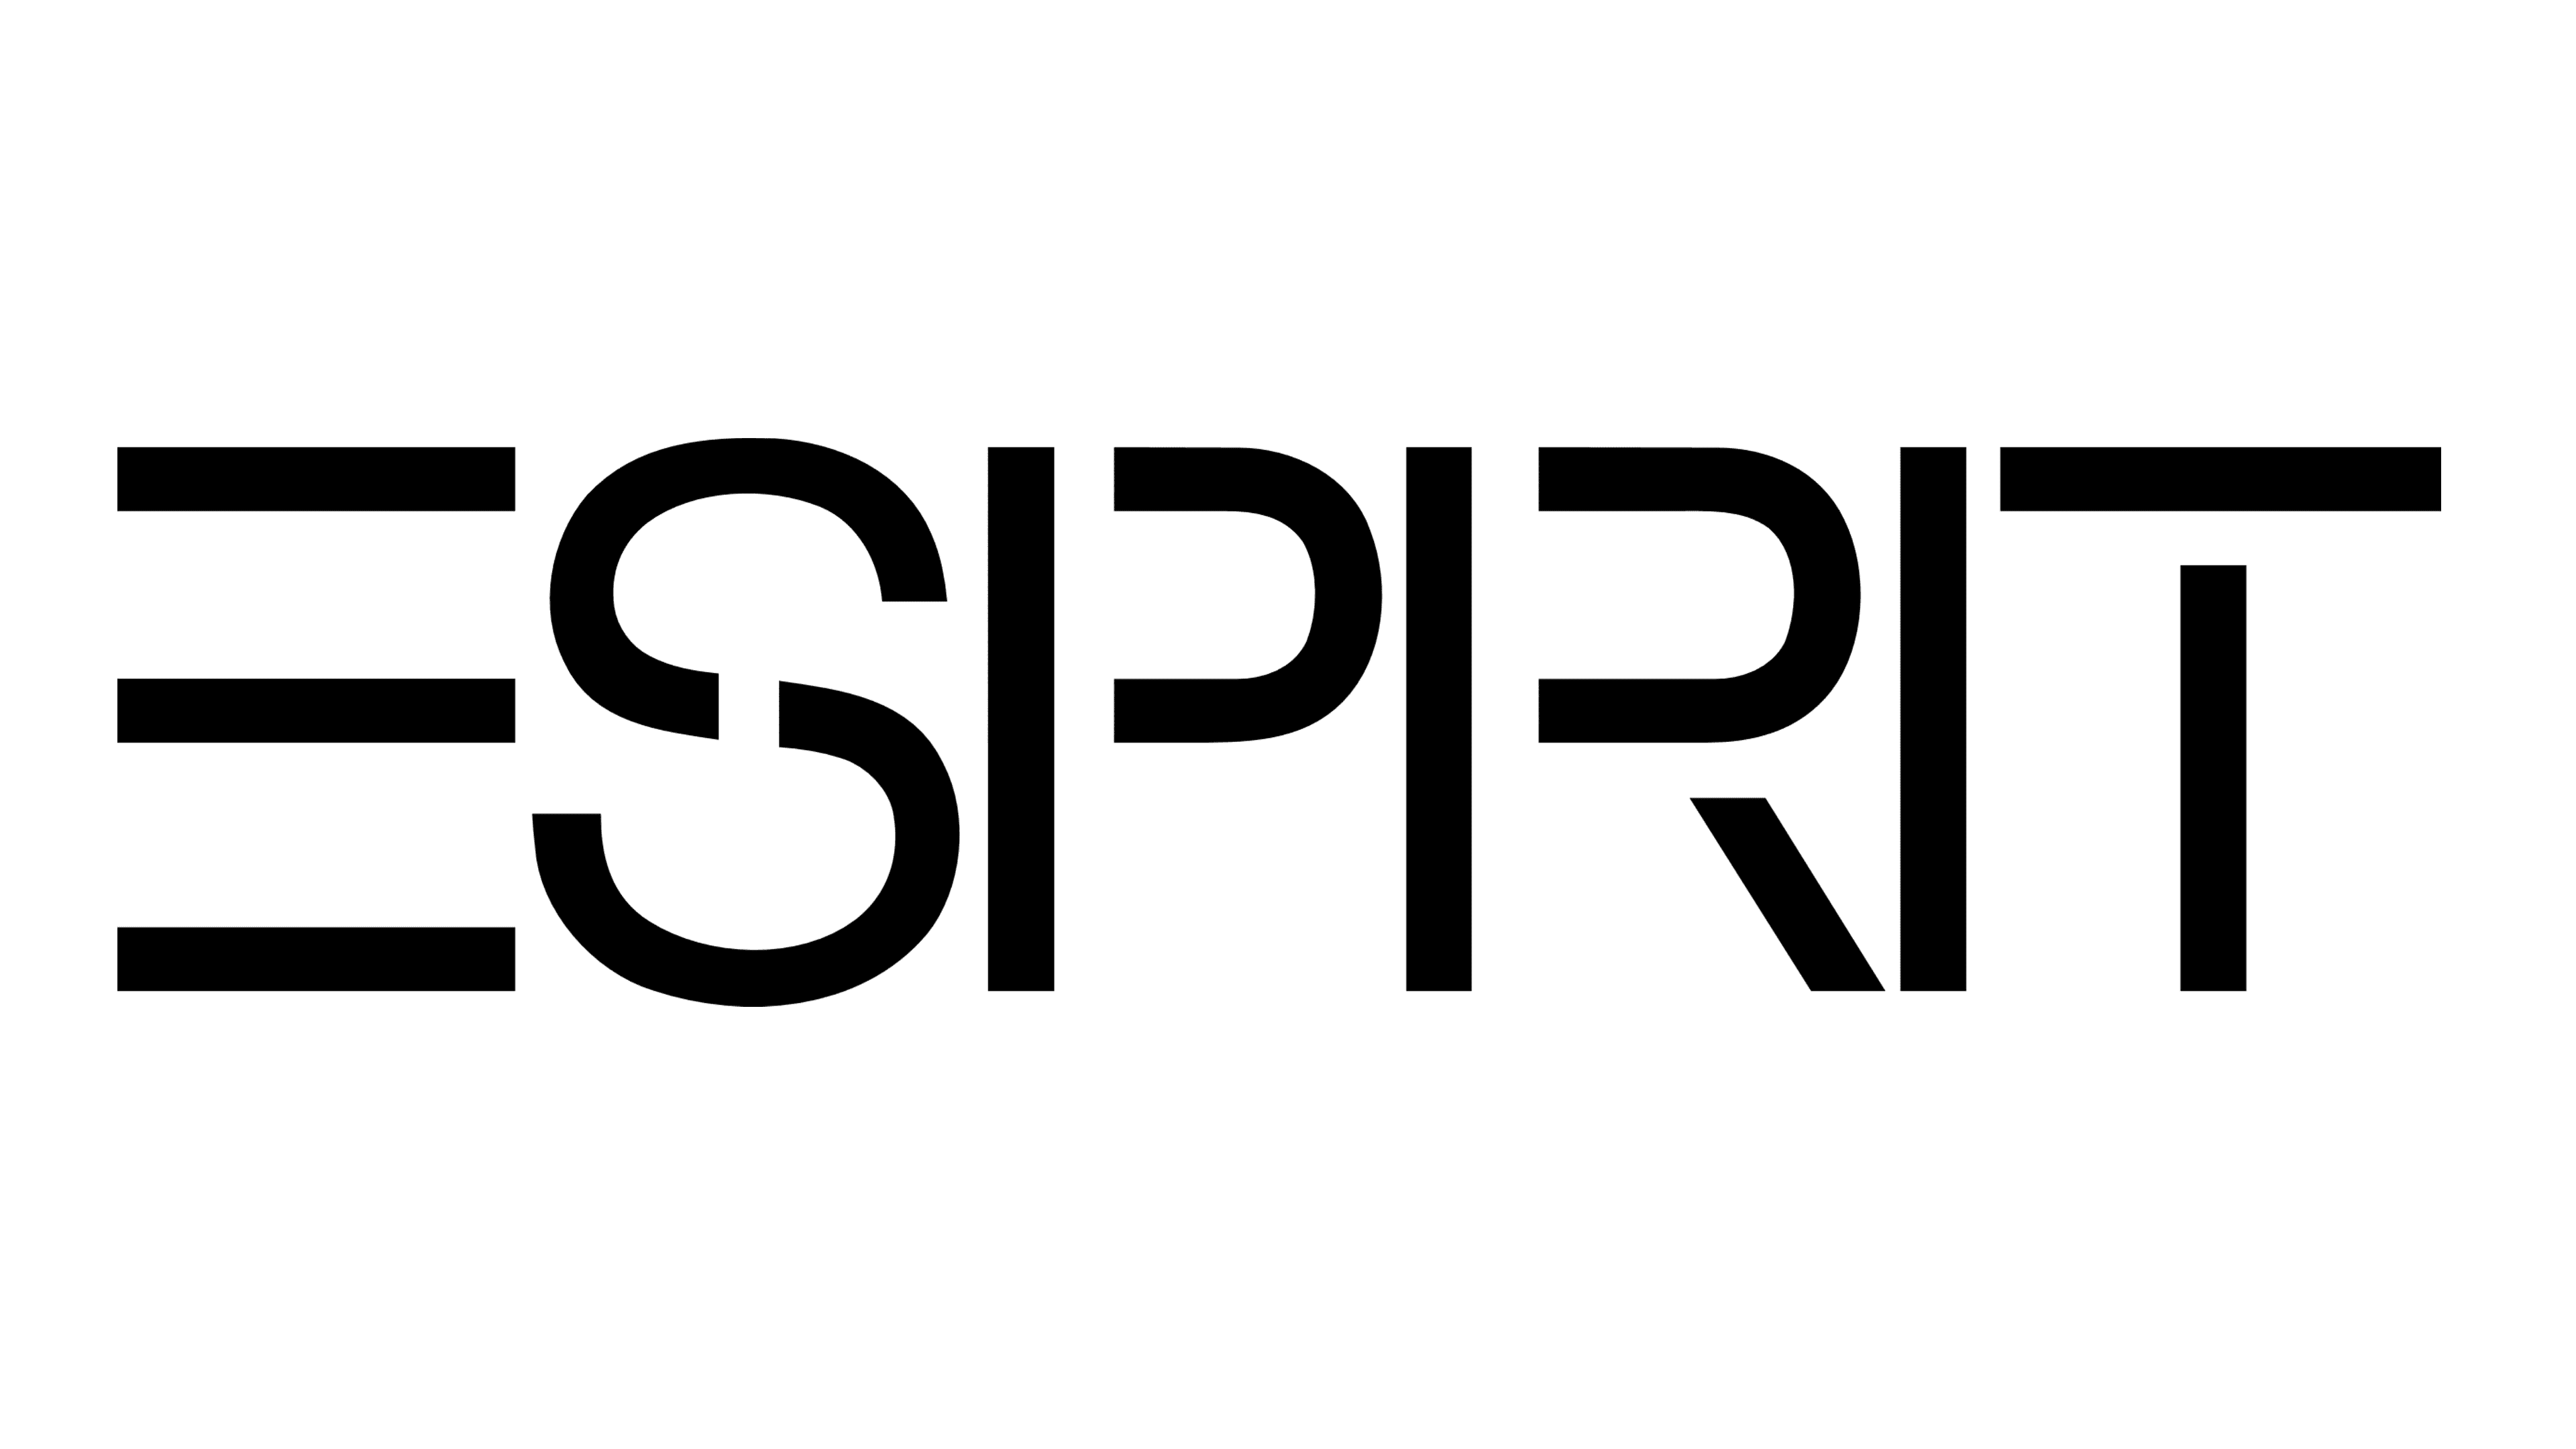 Esprit-logo.png